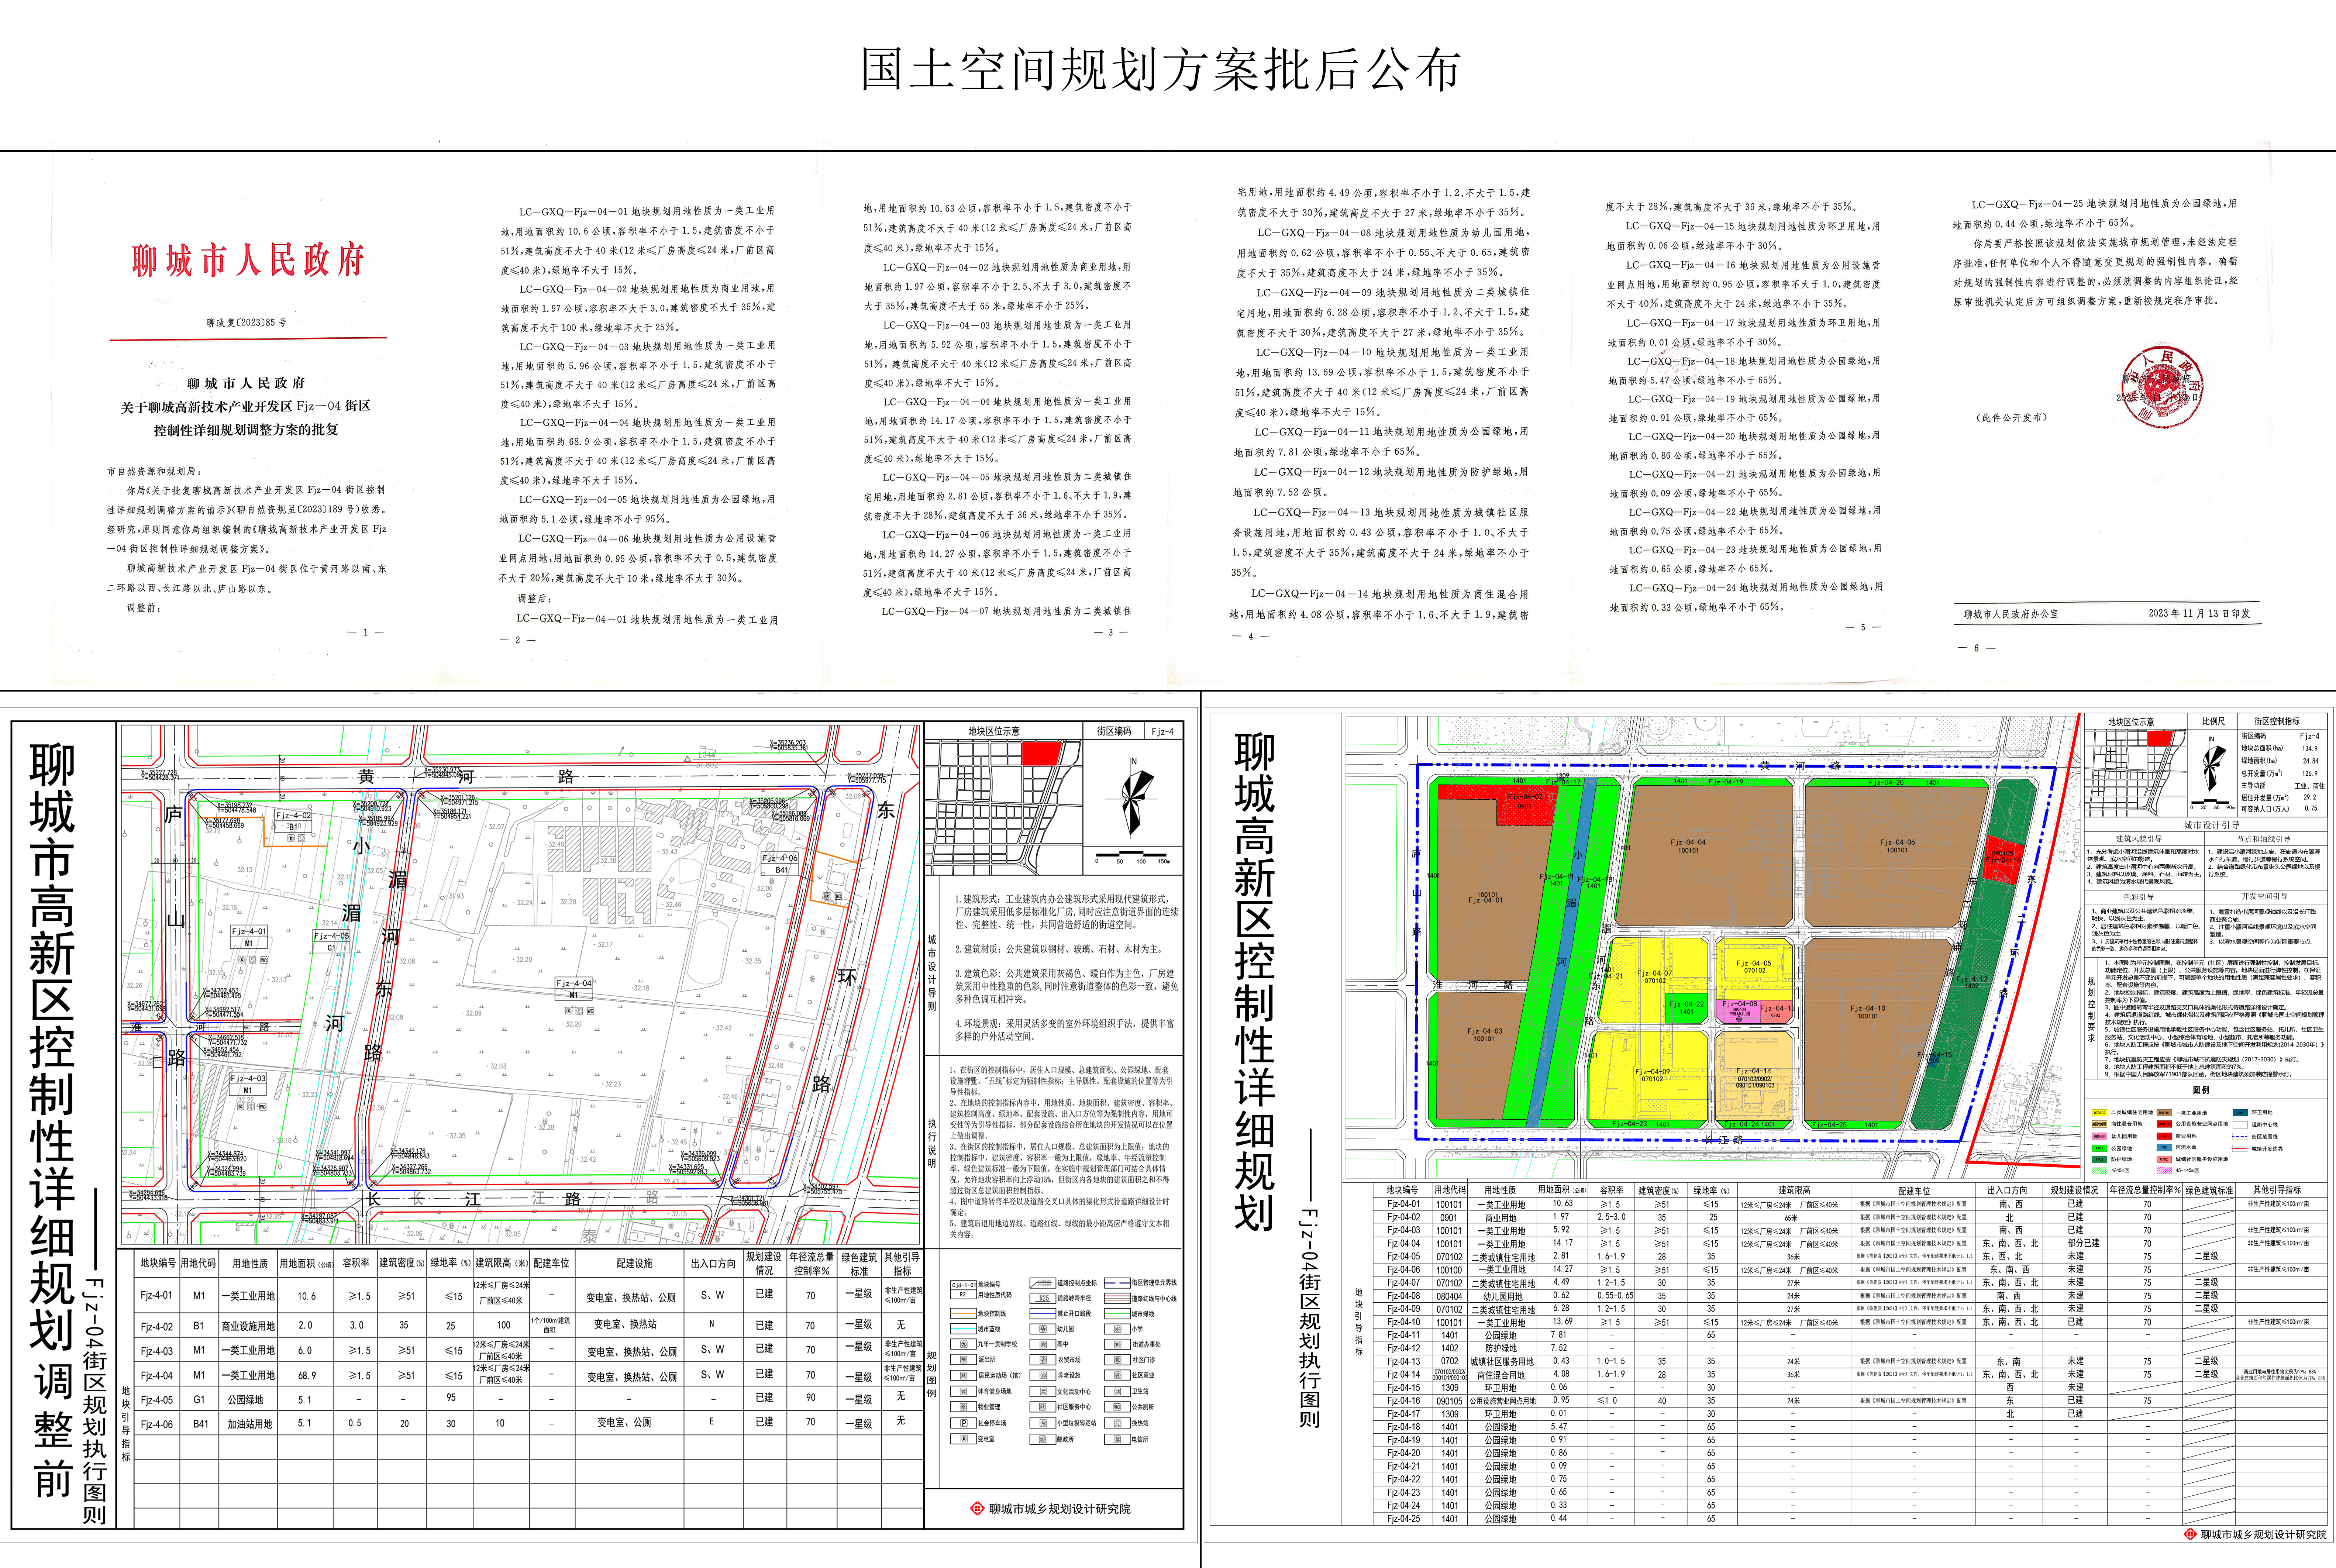 聊城市高新区FJZ-04街区控制性详细规划调整公告.jpg